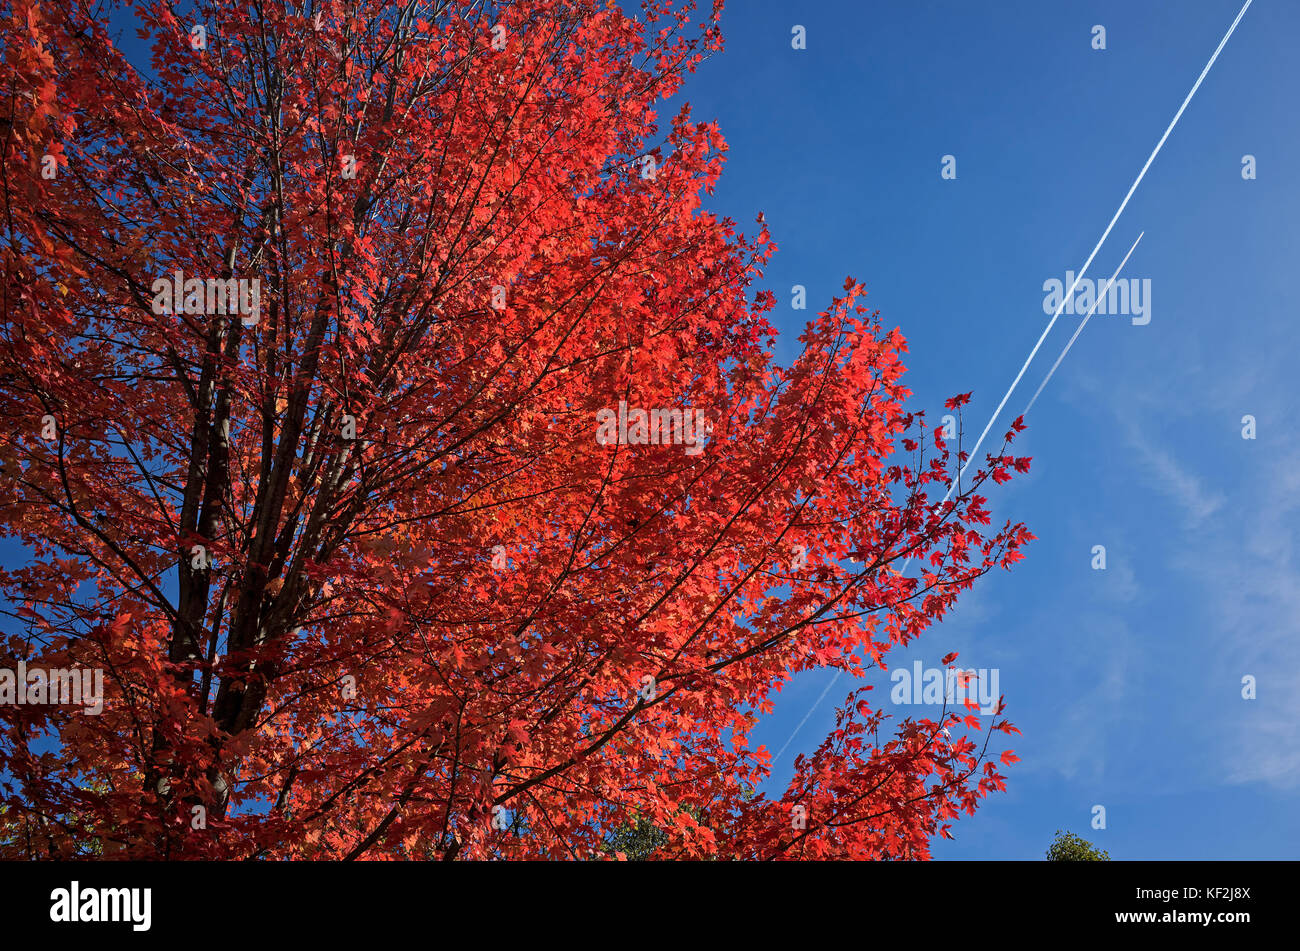 L'exposition de l'érable à feuilles d'automne, un phénomène qui affecte les feuilles vertes des arbres feuillus par laquelle ils prendre de diverses nuances de couleur. Banque D'Images